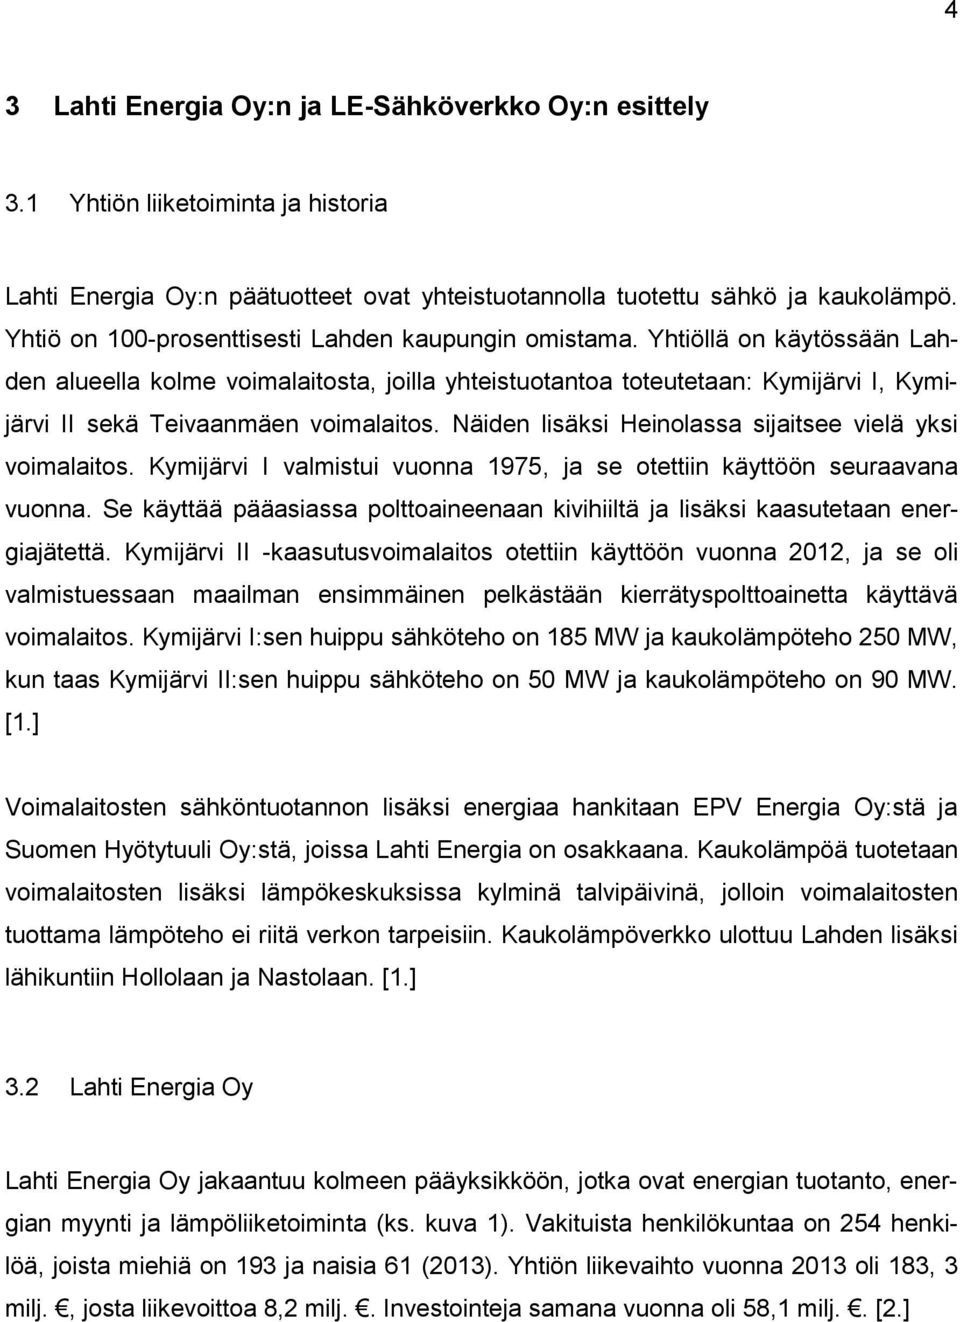 Yhtiöllä on käytössään Lahden alueella kolme voimalaitosta, joilla yhteistuotantoa toteutetaan: Kymijärvi I, Kymijärvi II sekä Teivaanmäen voimalaitos.